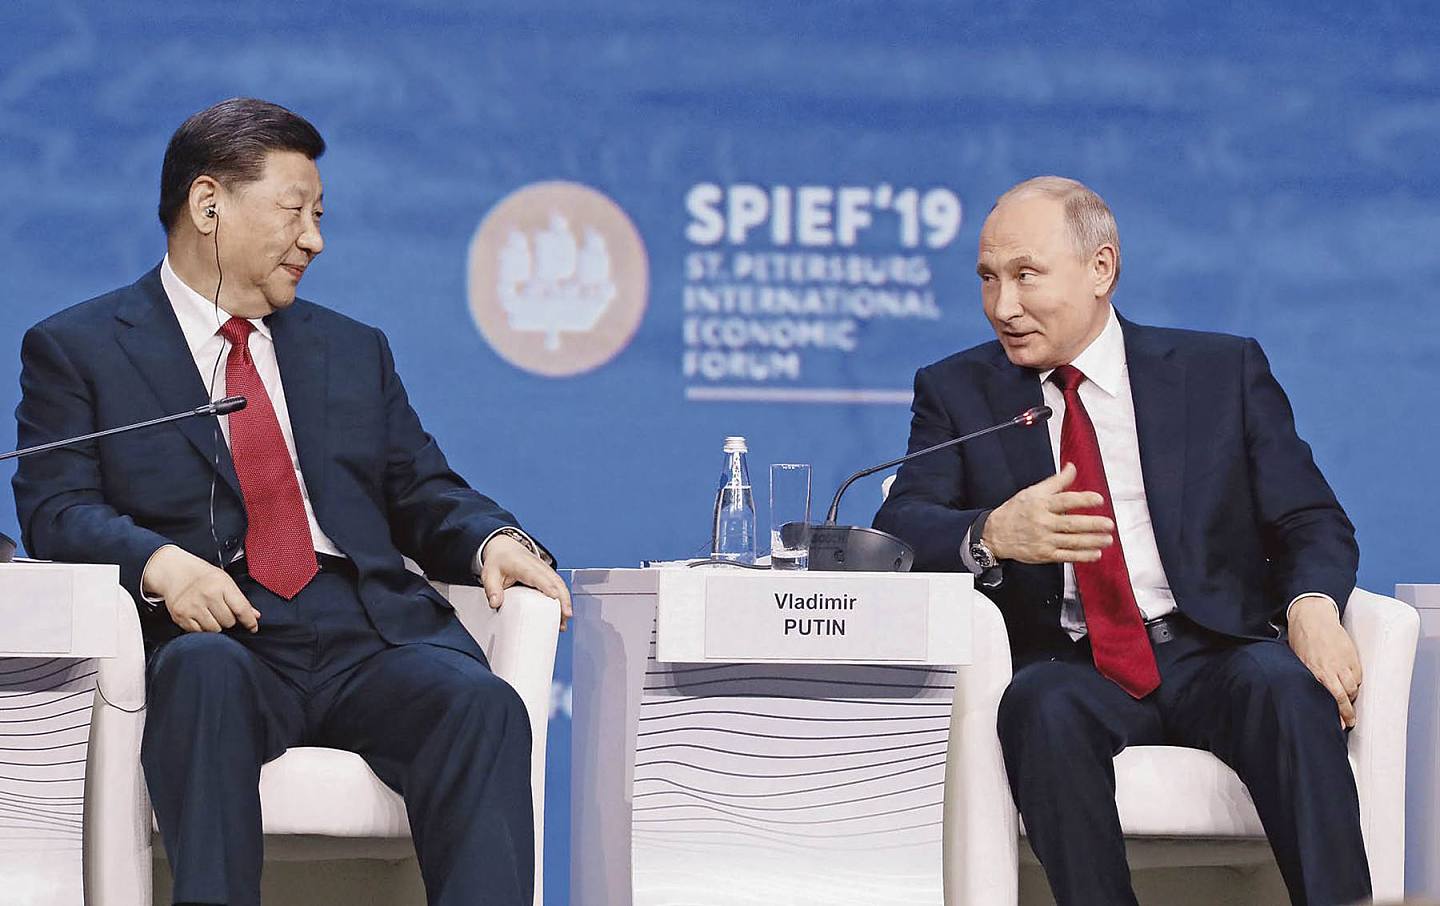 习近平6月访问俄罗斯，中俄两国逐渐联手的态势，对全球格局产生重要影响。图为习近平在2019年圣彼得堡经济论坛上和俄罗斯总统普京交谈。